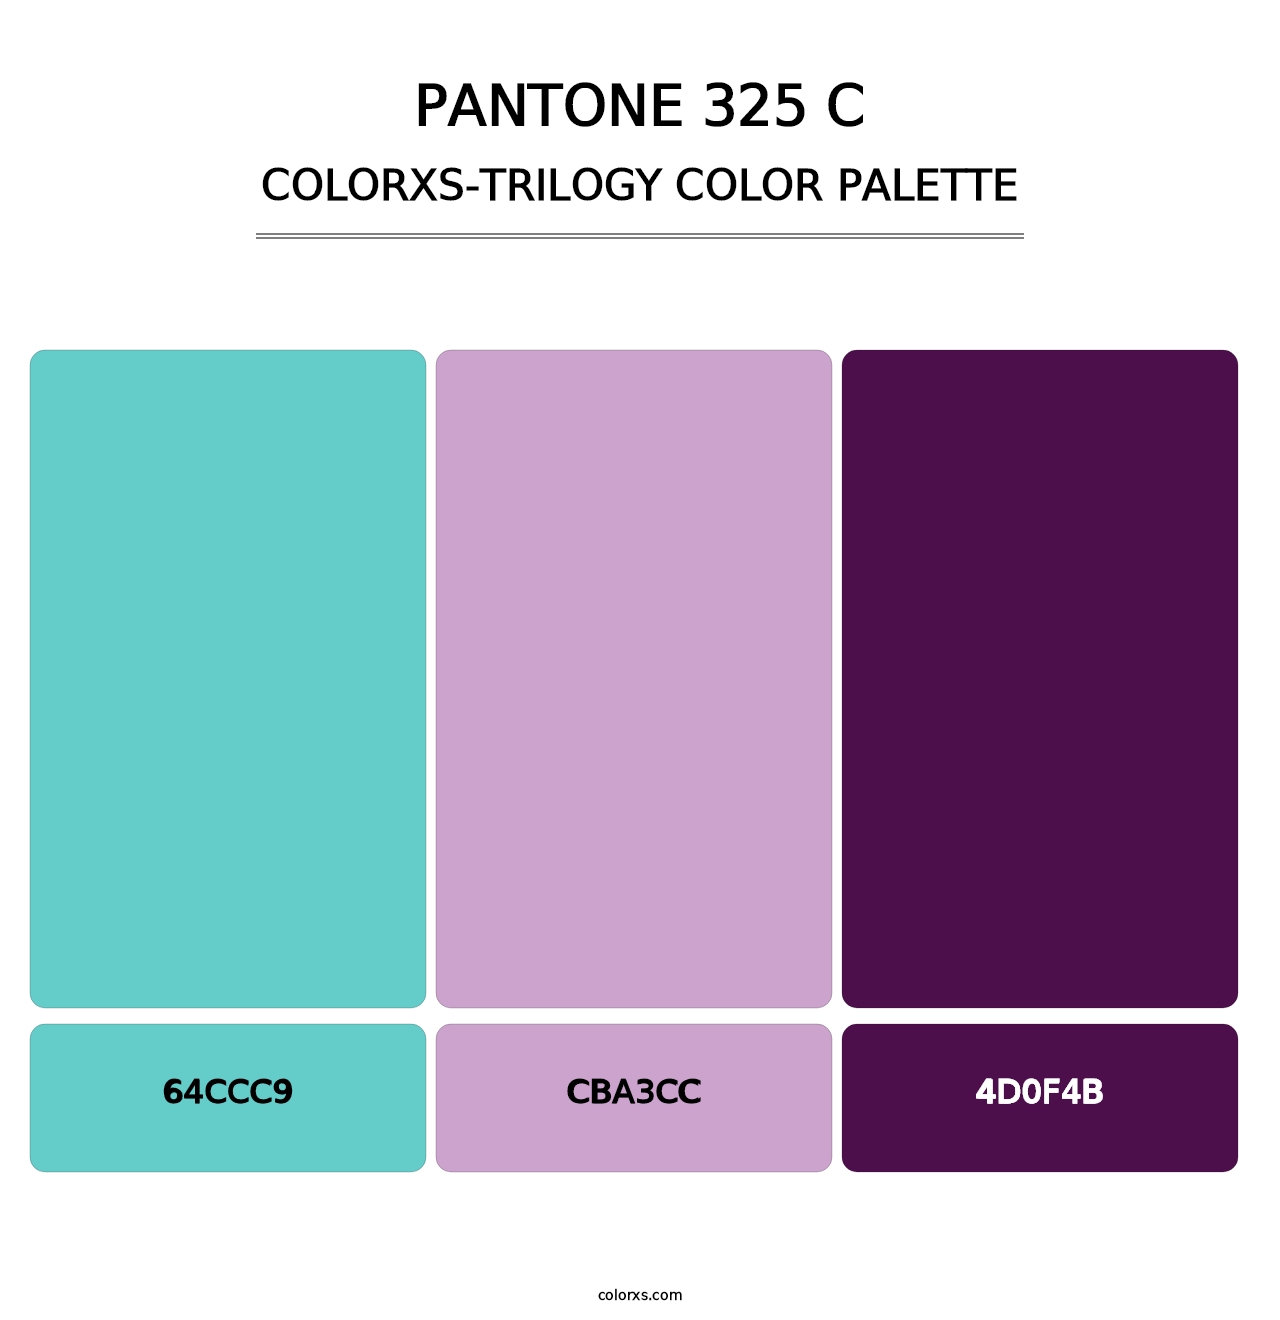 PANTONE 325 C - Colorxs Trilogy Palette